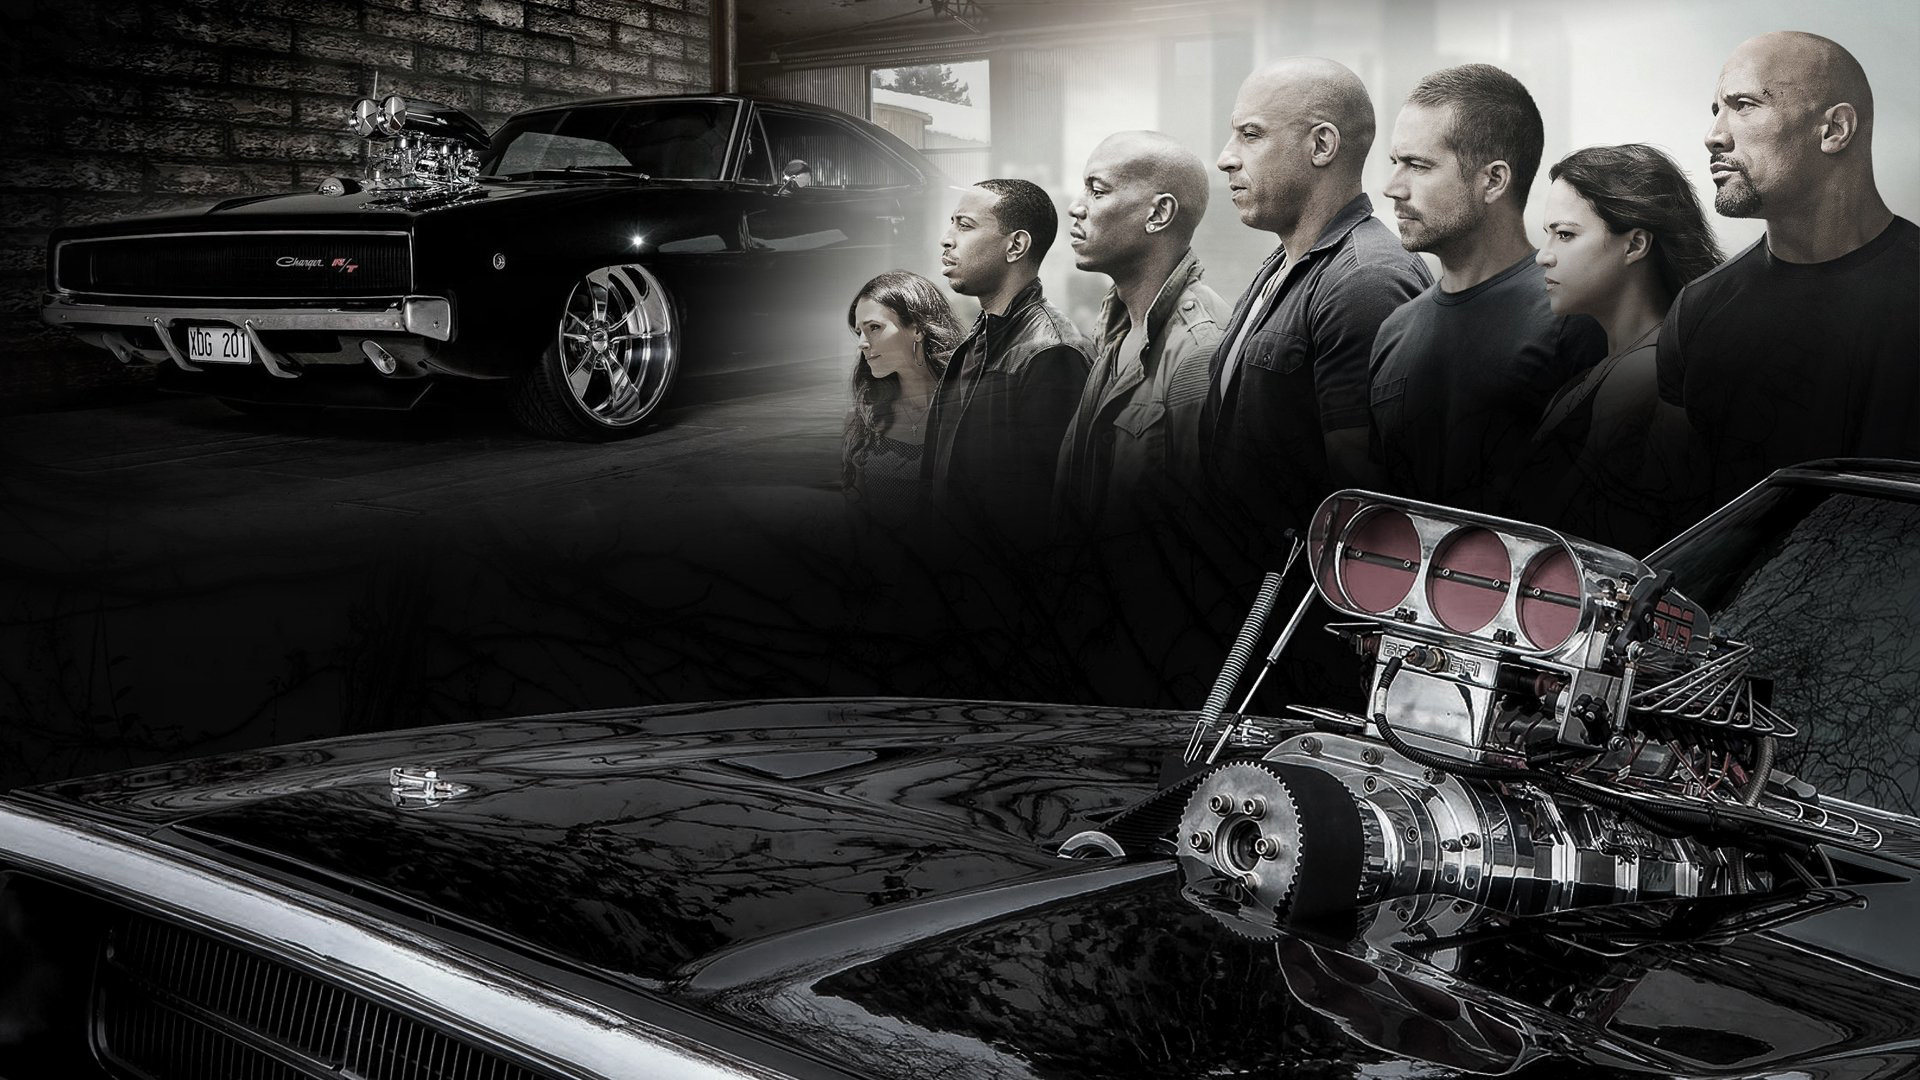 Jordana Brewster Ludacris Michelle Rodriguez Paul Walker Tyrese Gibson Vin Diesel 2K Fast And Furious